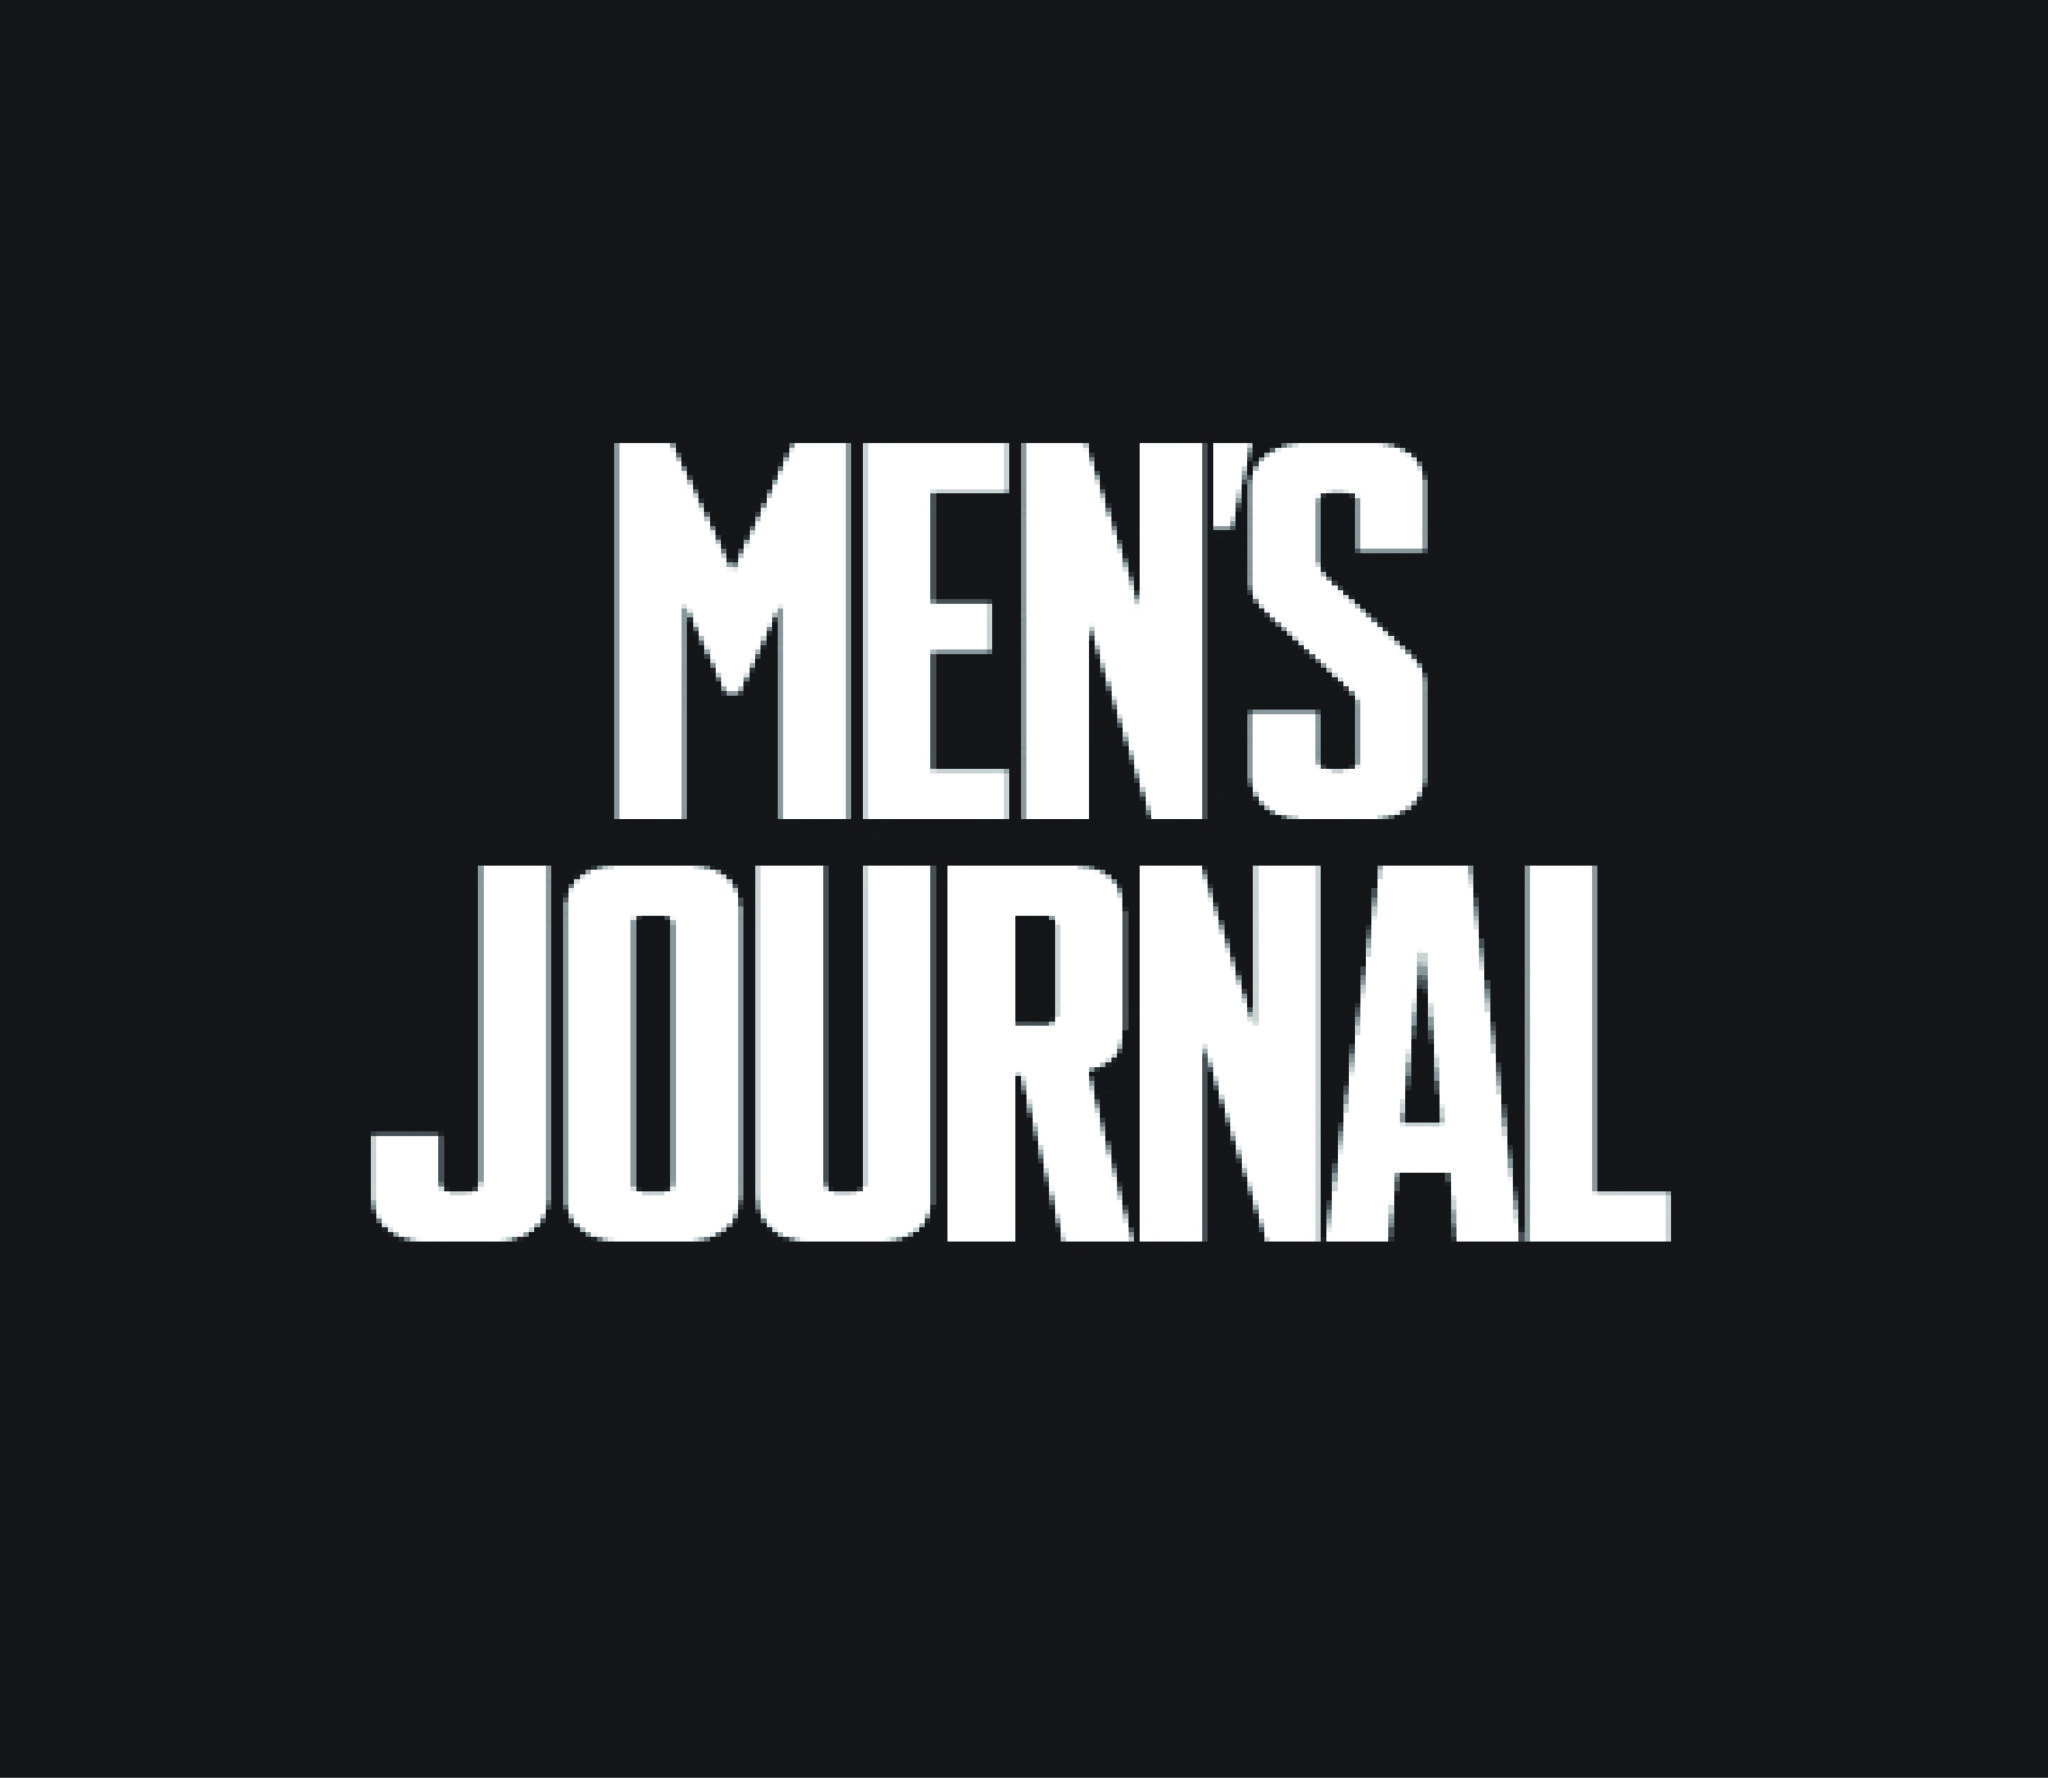 Men's Journal Logo - Metronomic